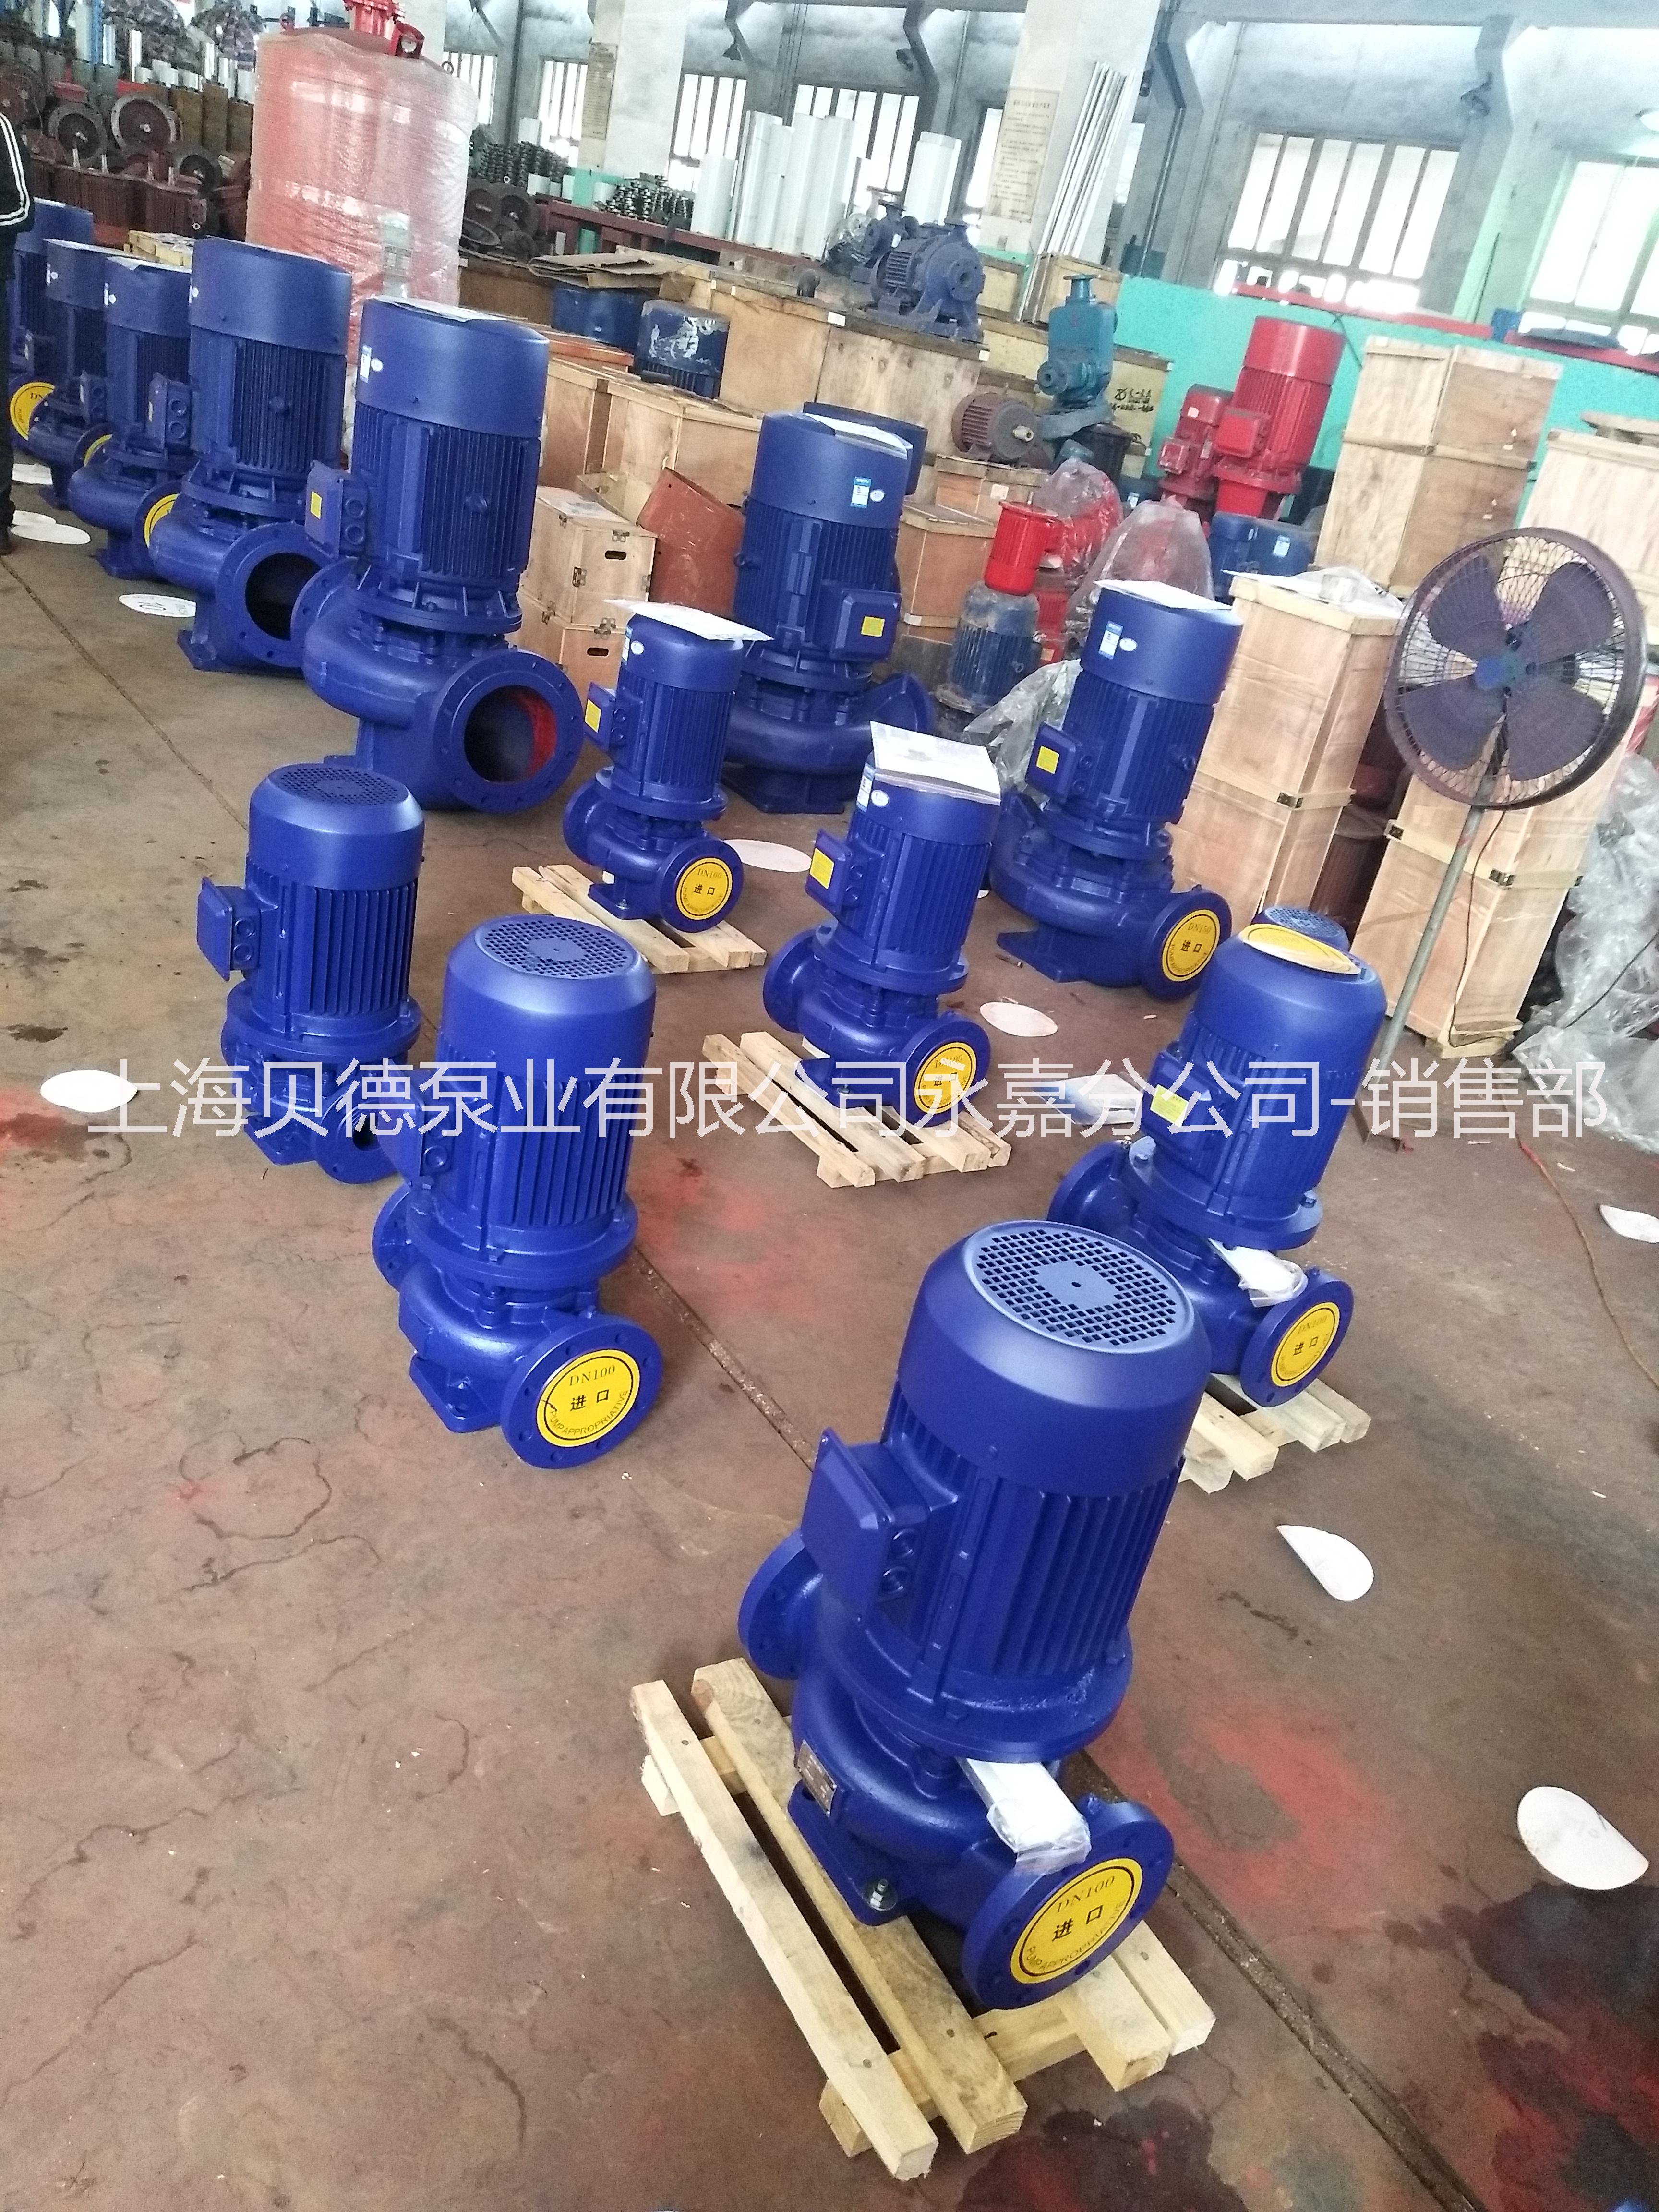 上海贝德泵业有限公司西安办事处ISG80-160  管道循环泵，自动单级单吸管道泵   ISG管道空调循环泵图片